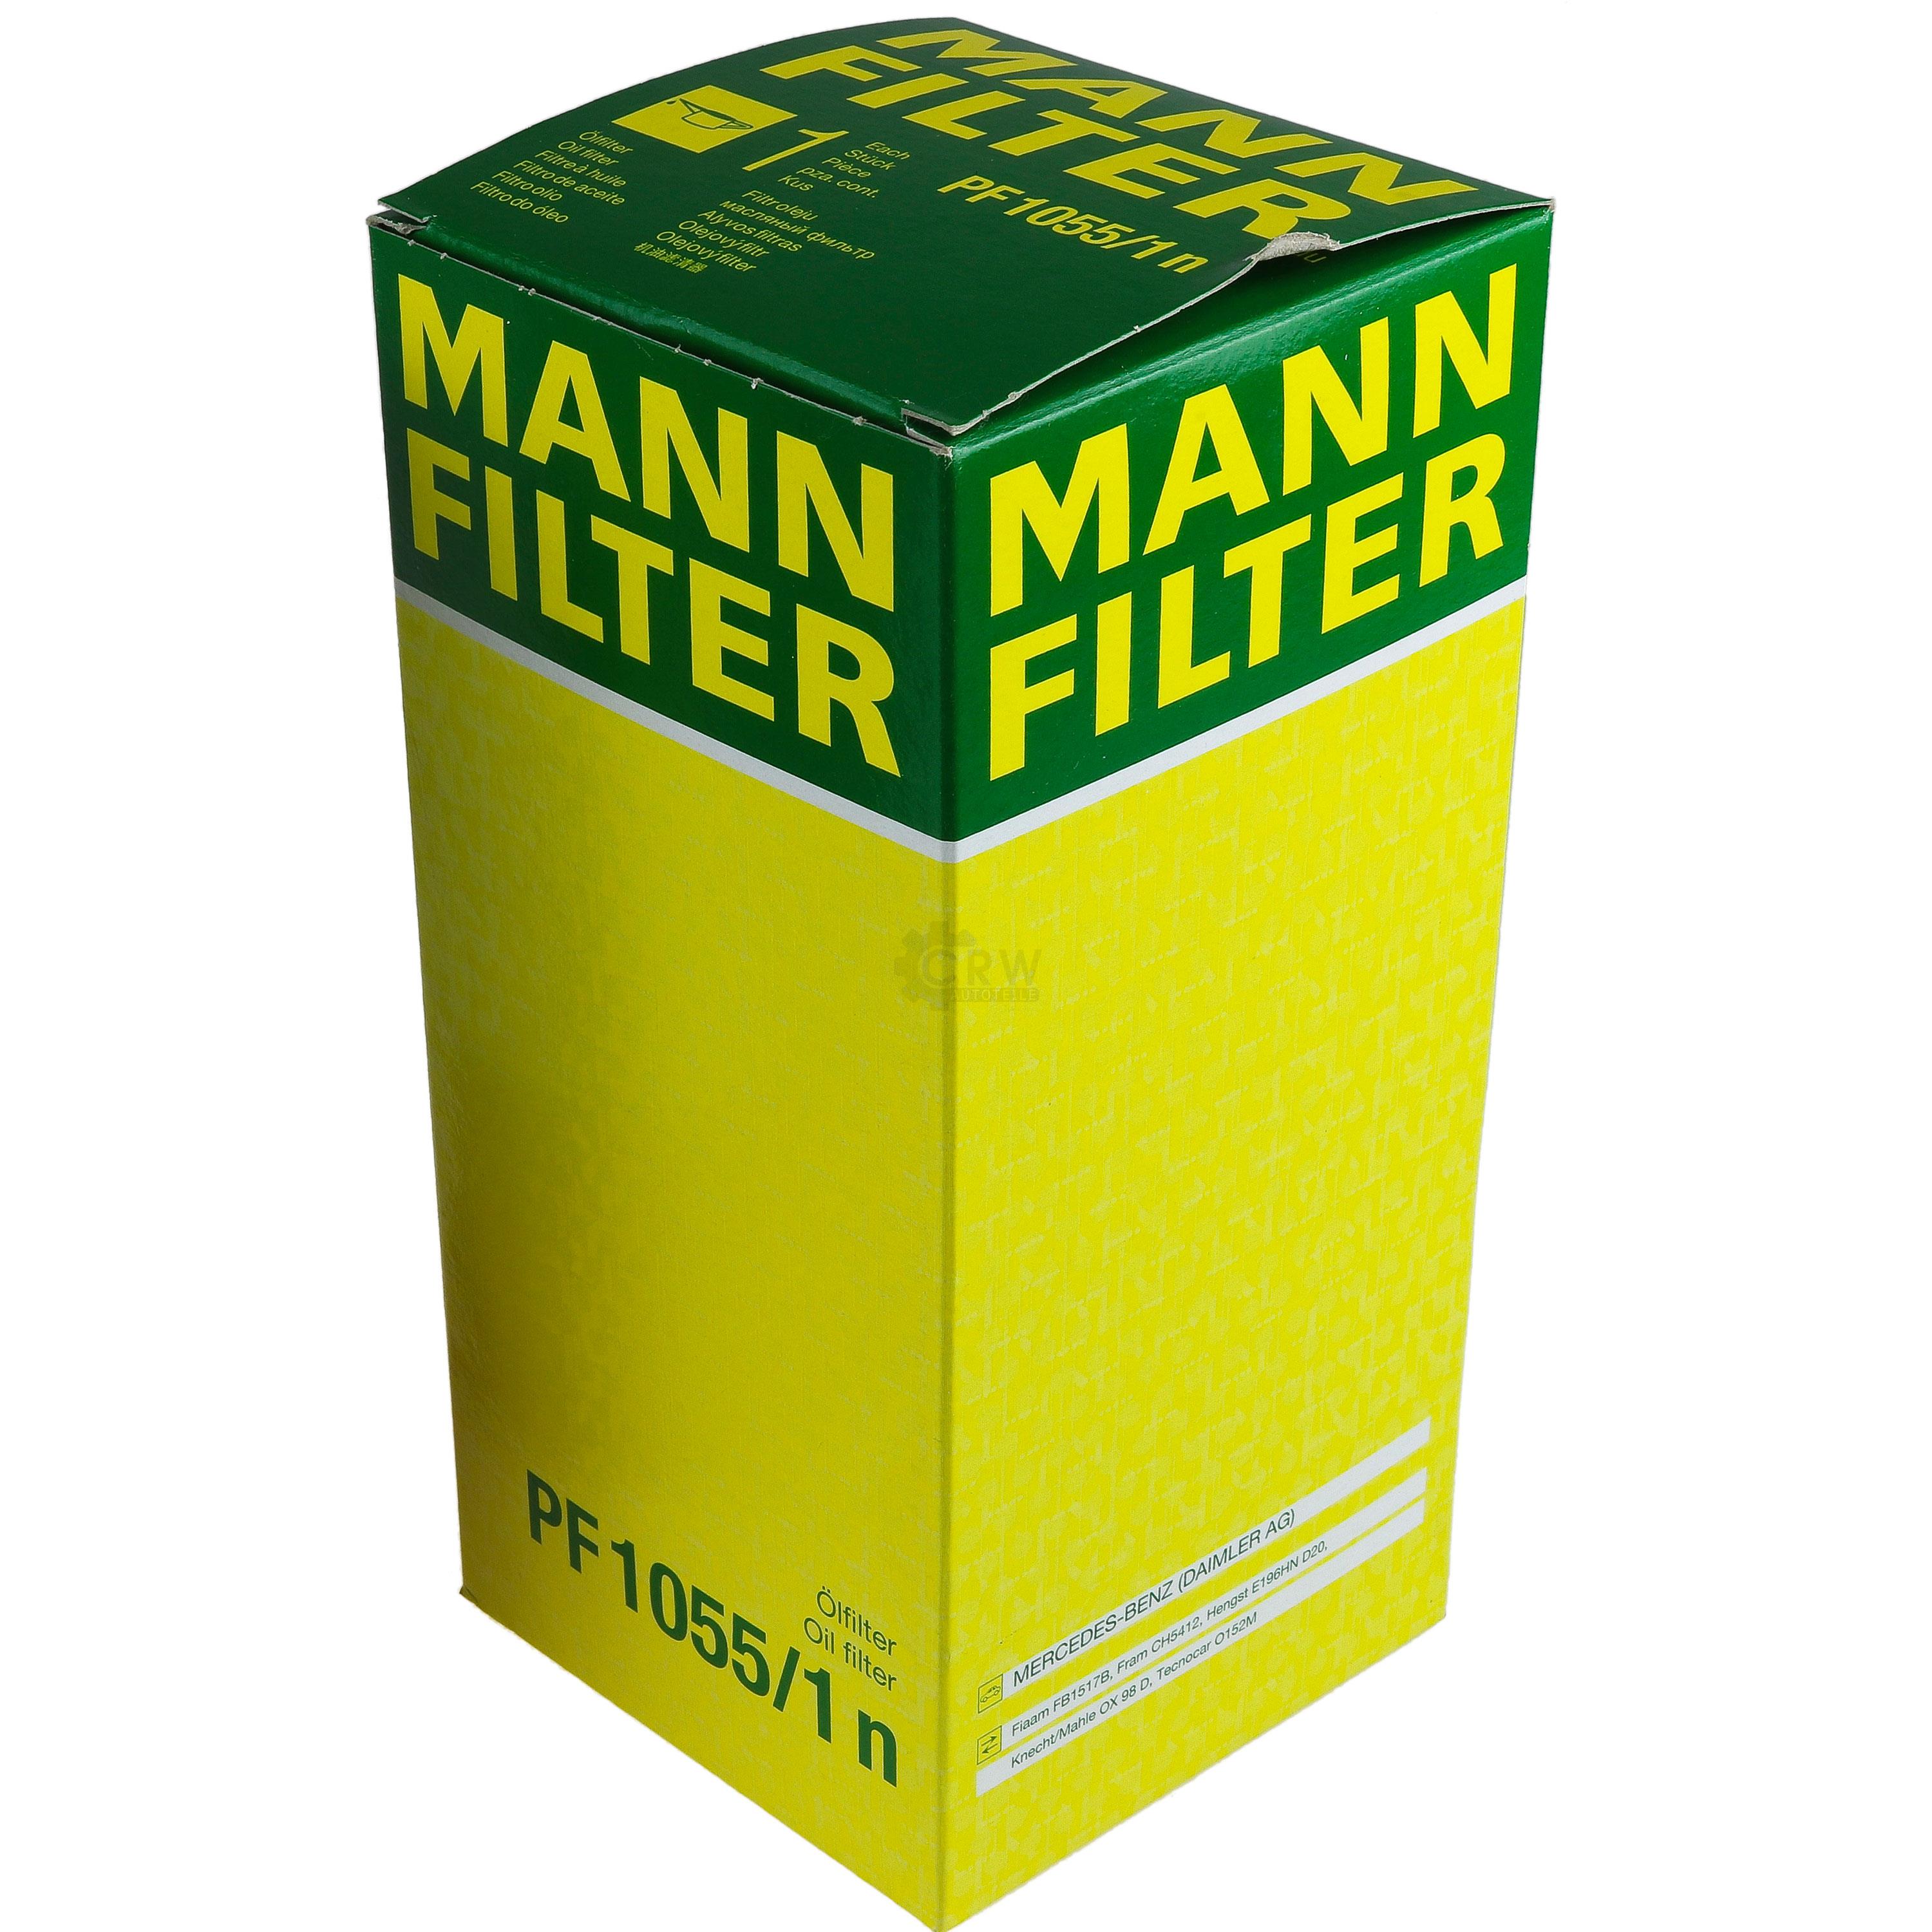 MANN-FILTER Ölfilter Oelfilter PF 1055/1 n Oil Filter